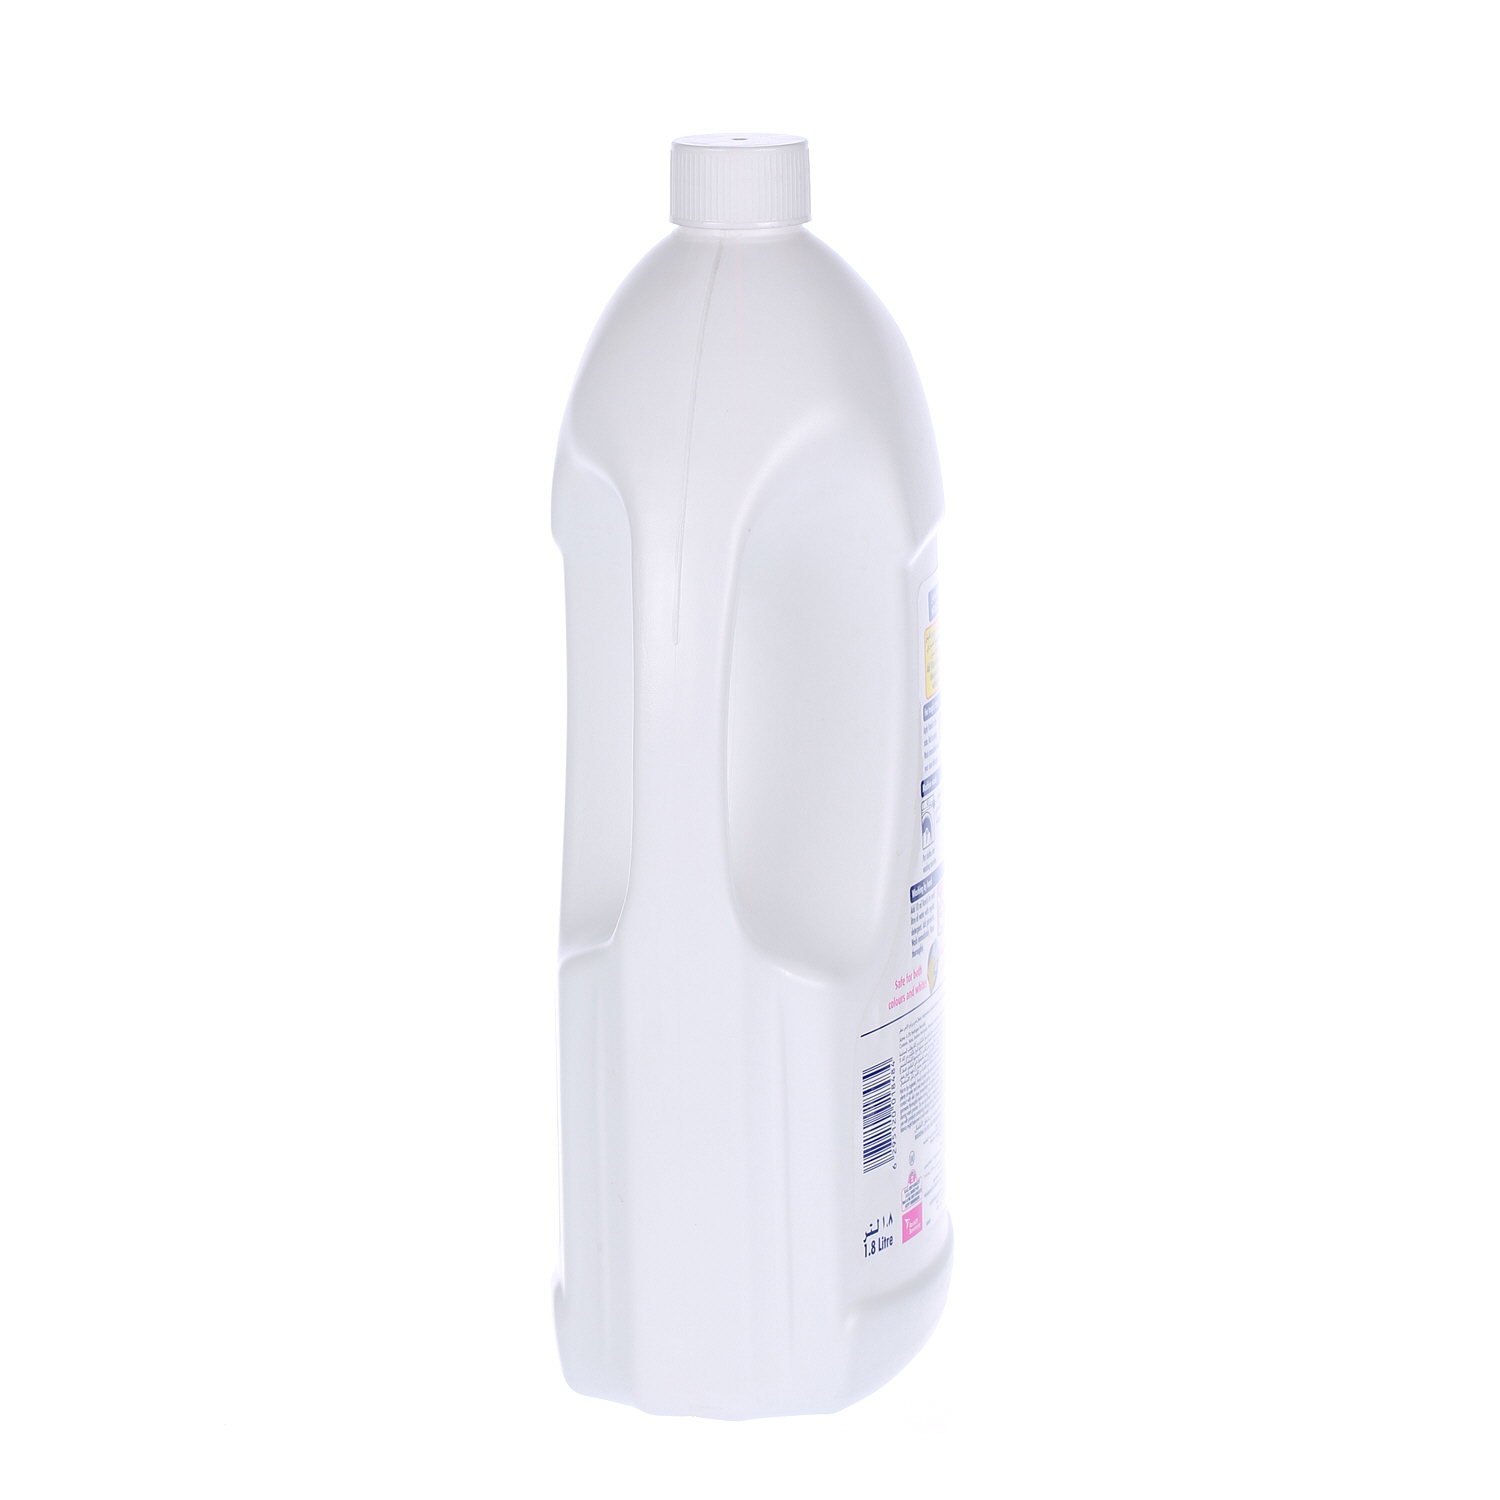 Vanish White Liquid 1.8 L